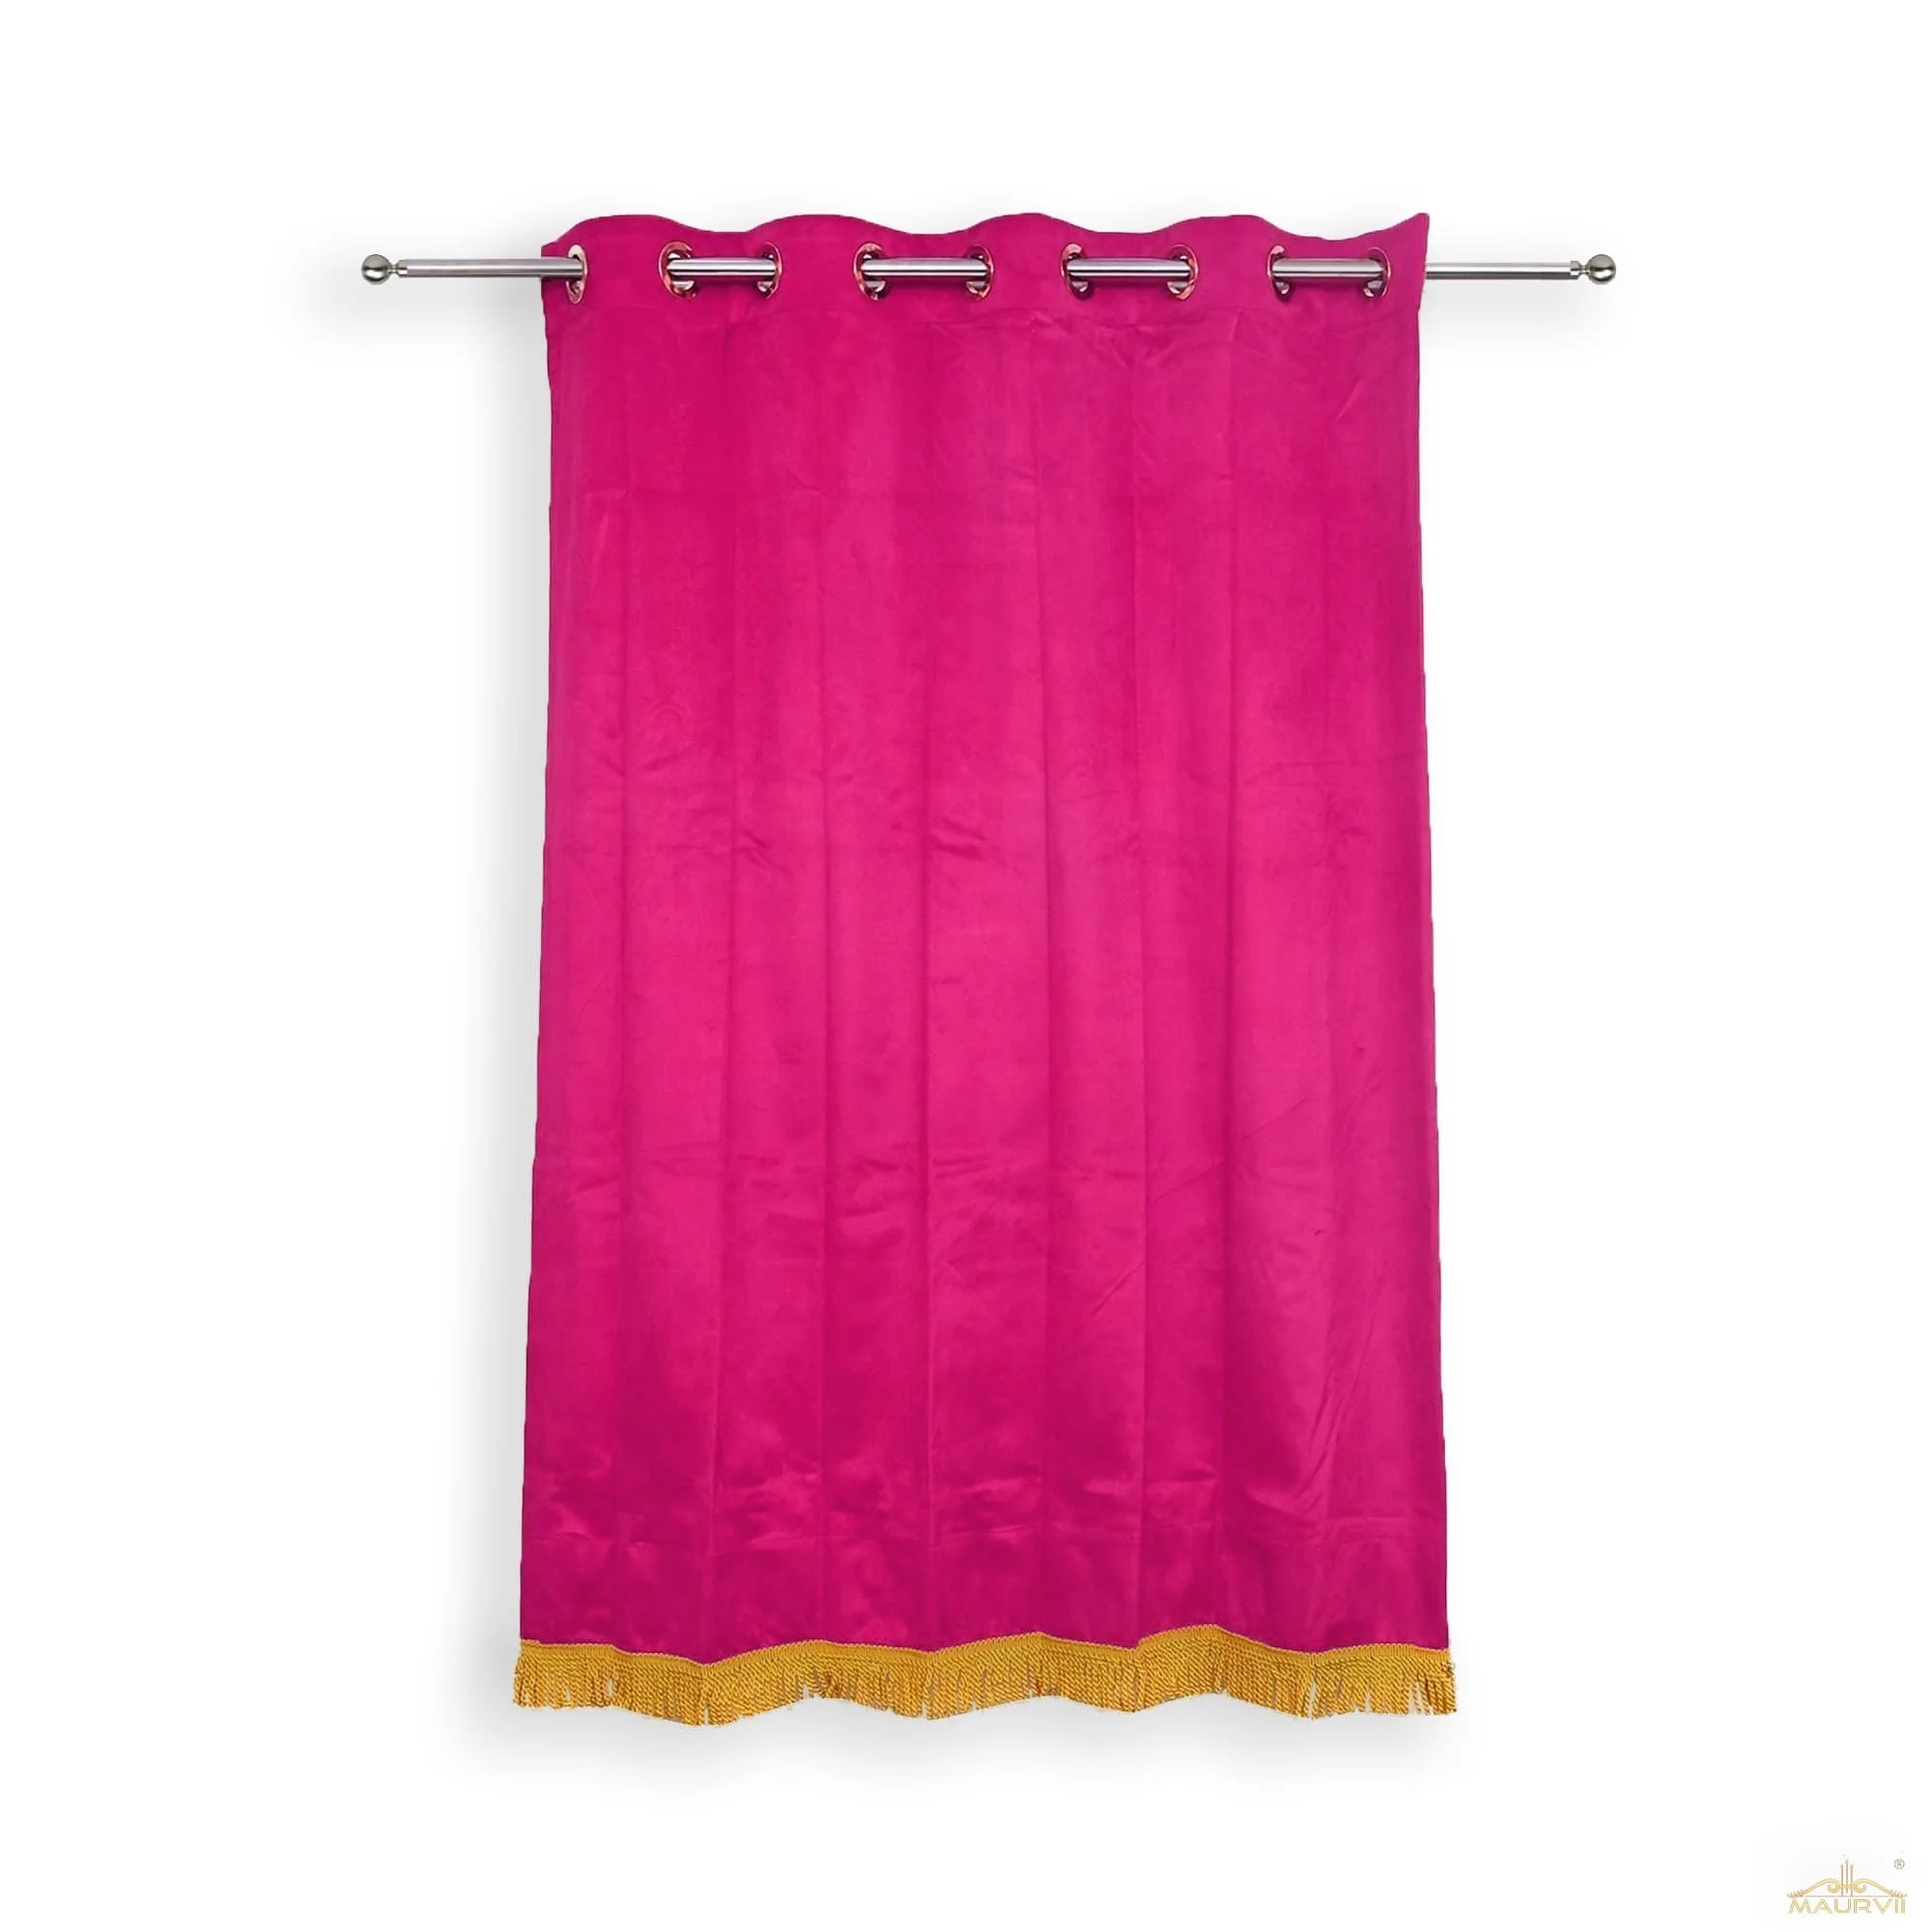 Violet red drapes with golden fringe